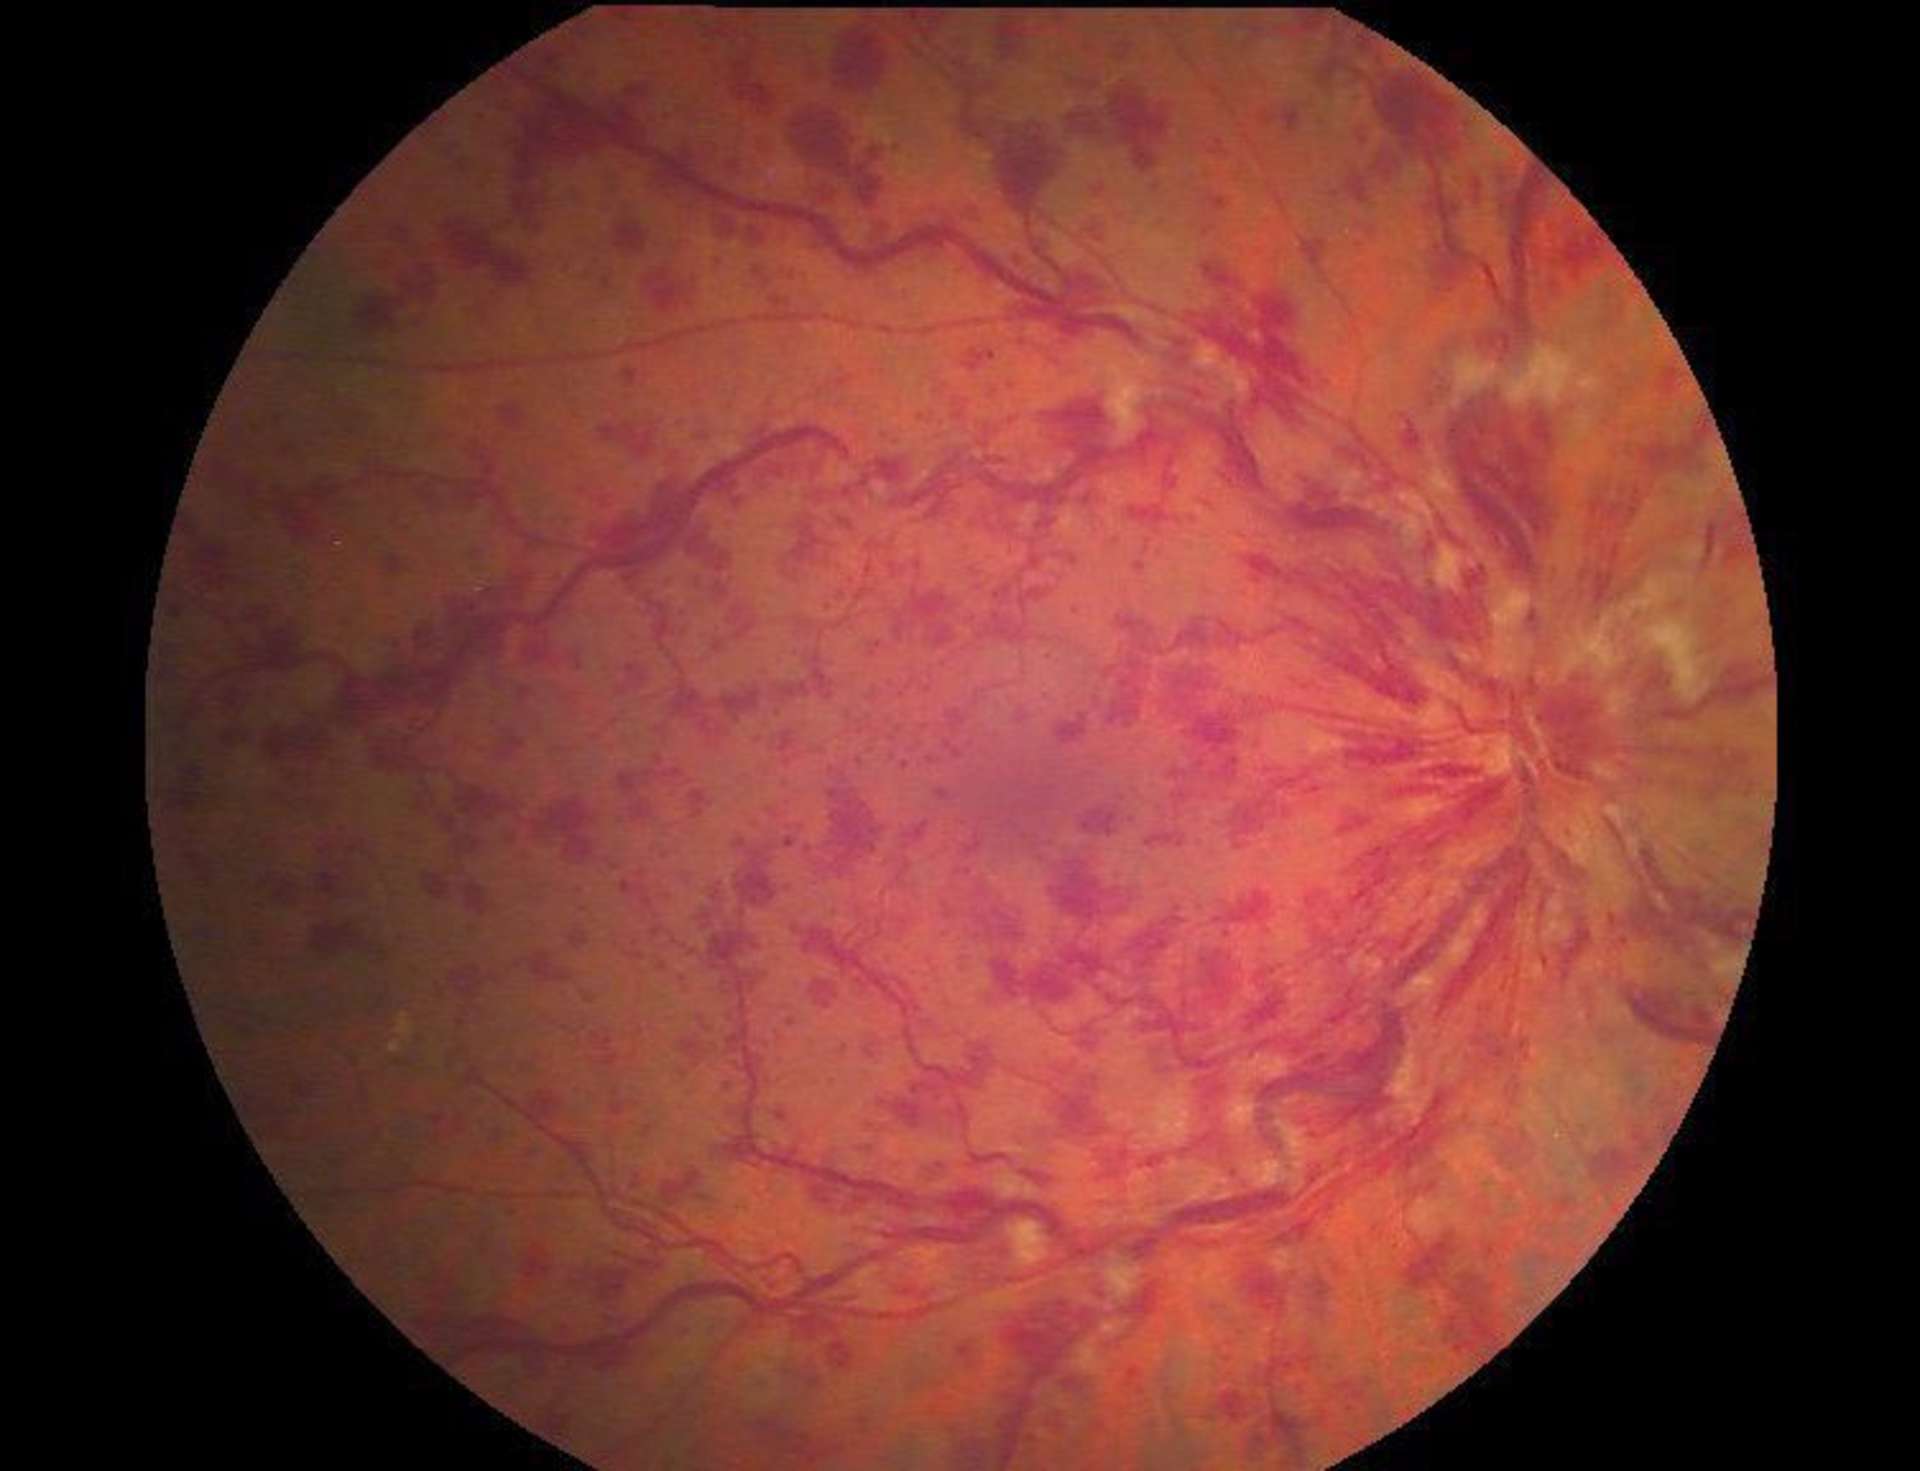 OVCR œdémateuse de l’œil droit à trois semaines. AV à 6/10, hémorragies rétiniennes diffuses, dilatation et tortuosité veineuses, nodules cotonneux (cliché couleur du FO).
